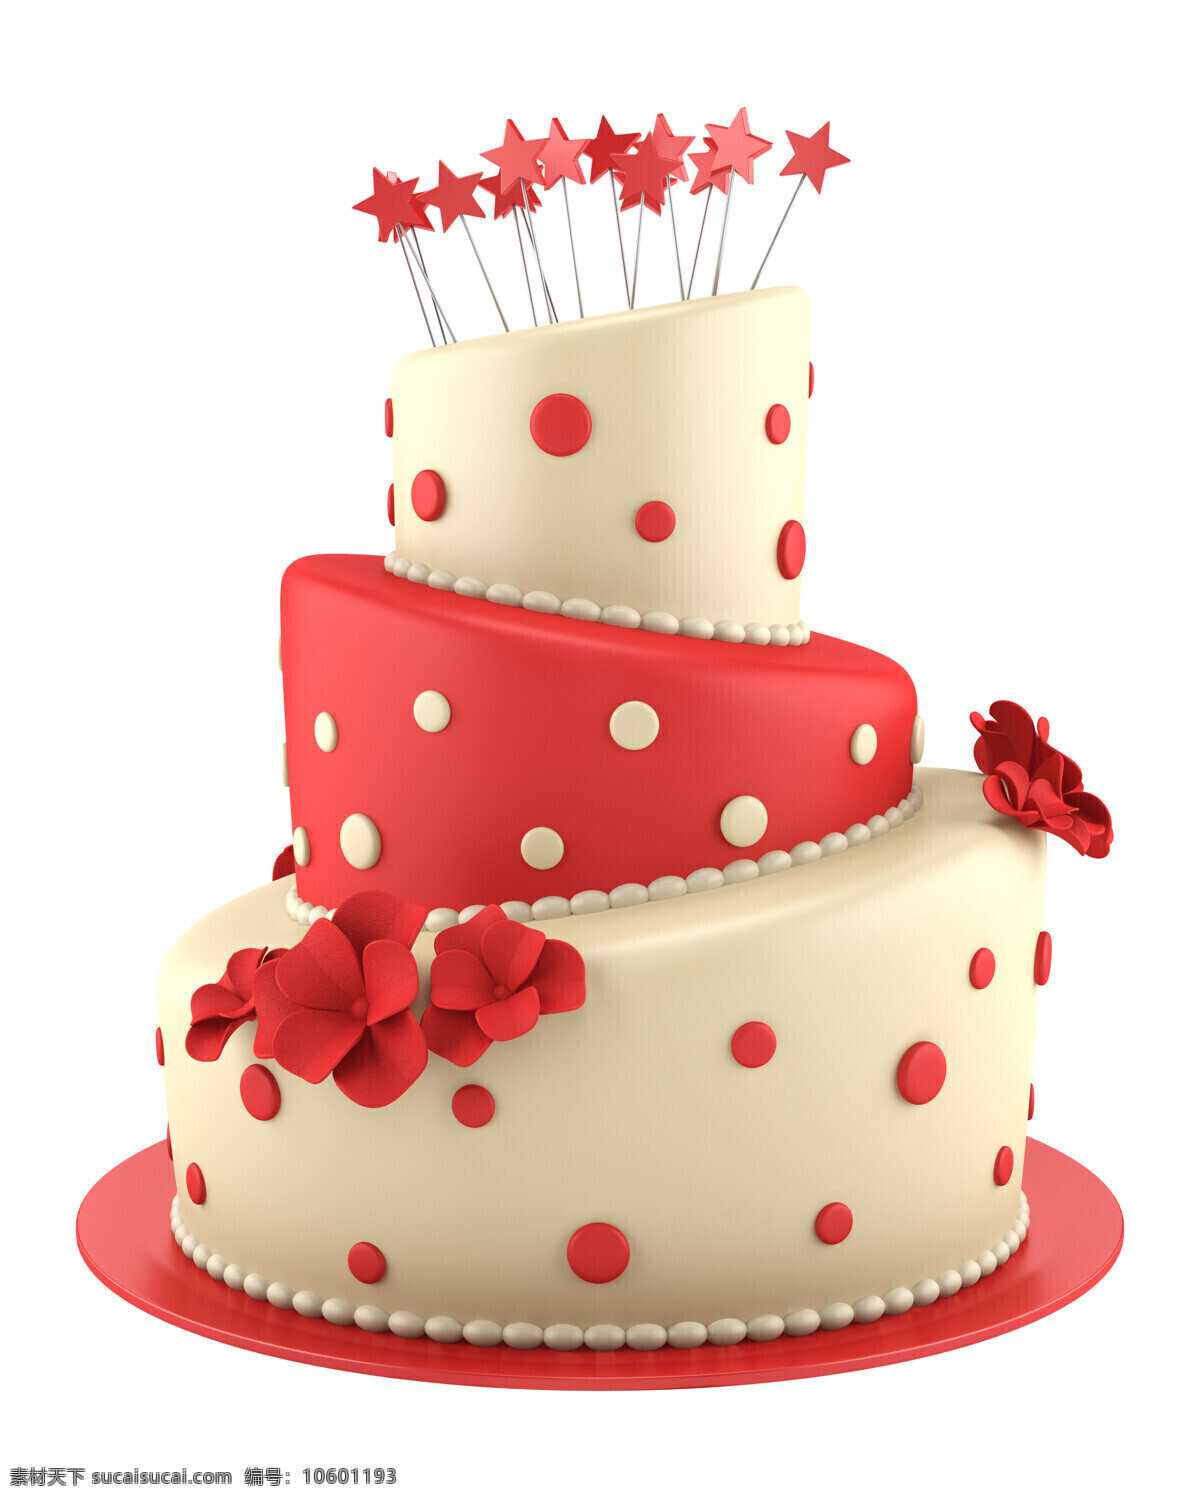 星星 花朵 生日蛋糕 蛋糕 糕点 美食 甜品 其他类别 餐饮美食 白色